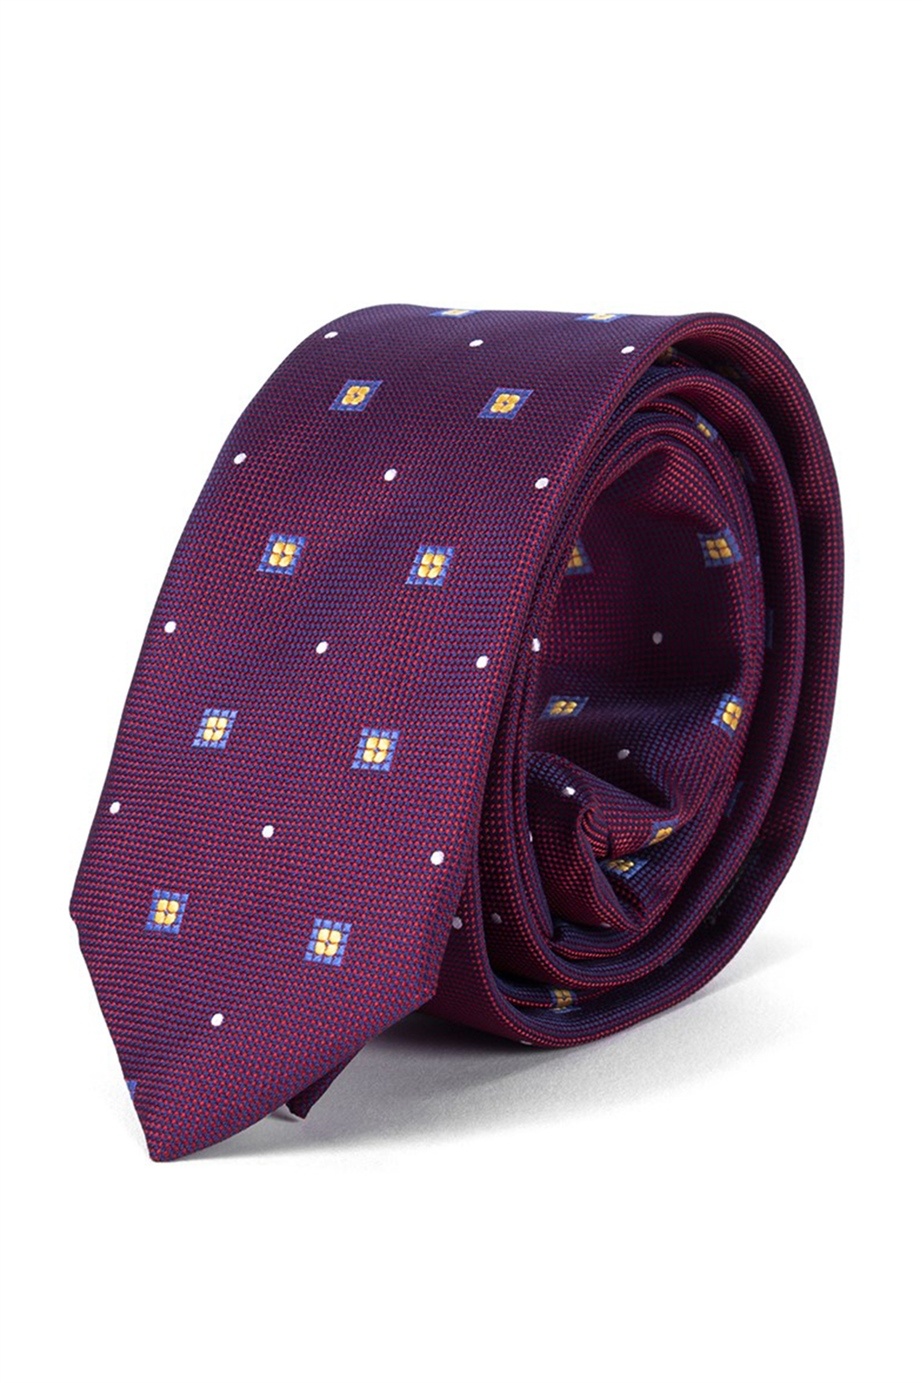 Sötétlila színű virágmintás vékony nyakkendő